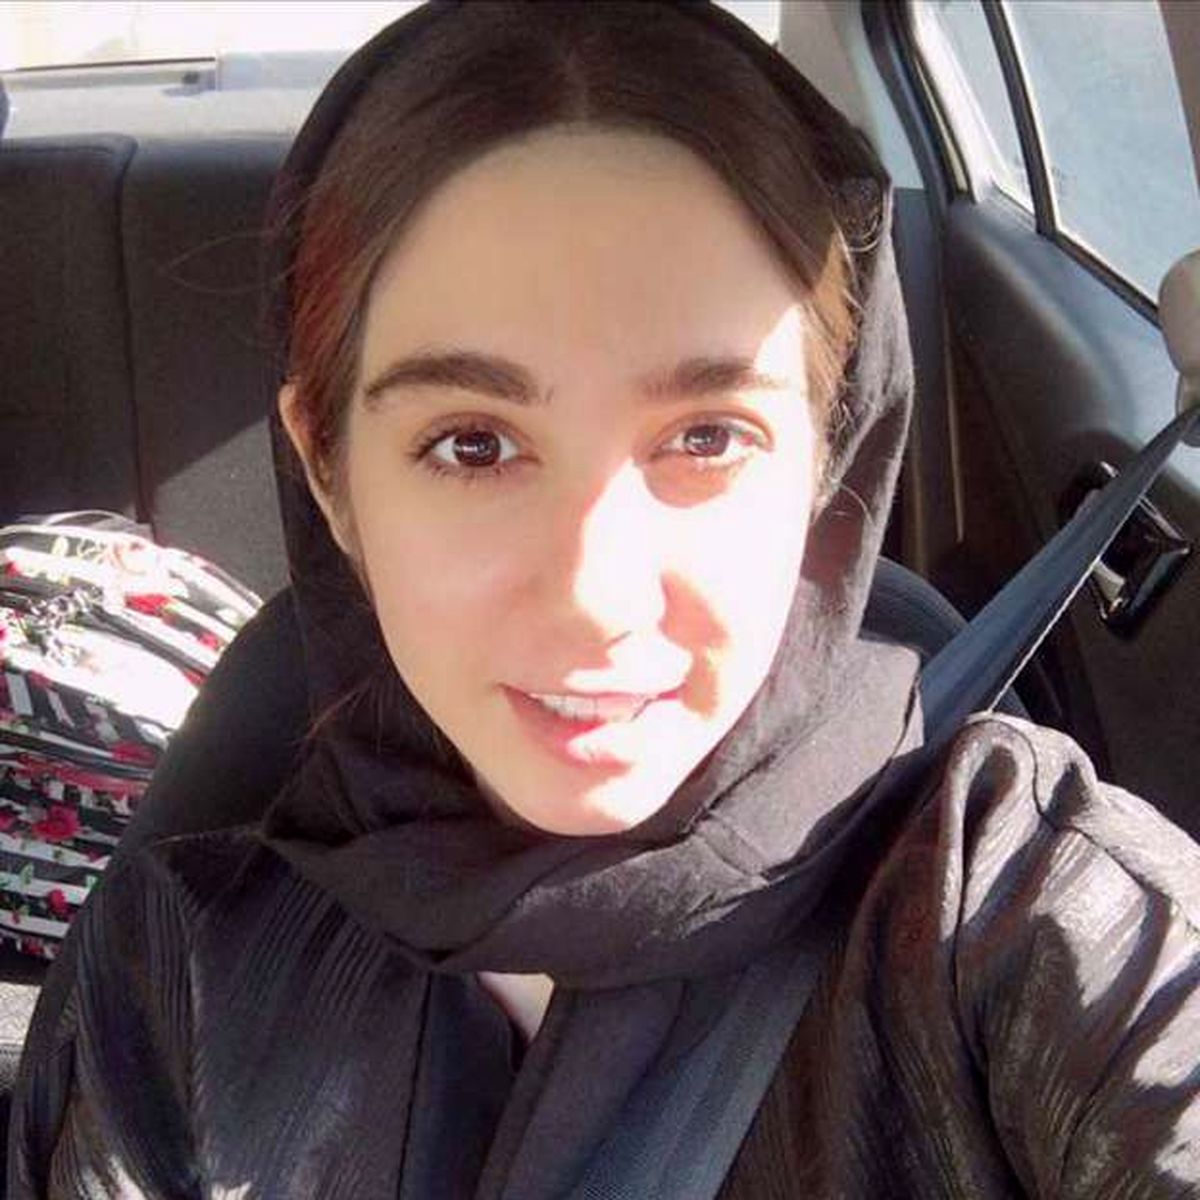 ملیکا هاشمی، خبرنگار، بازداشت شد